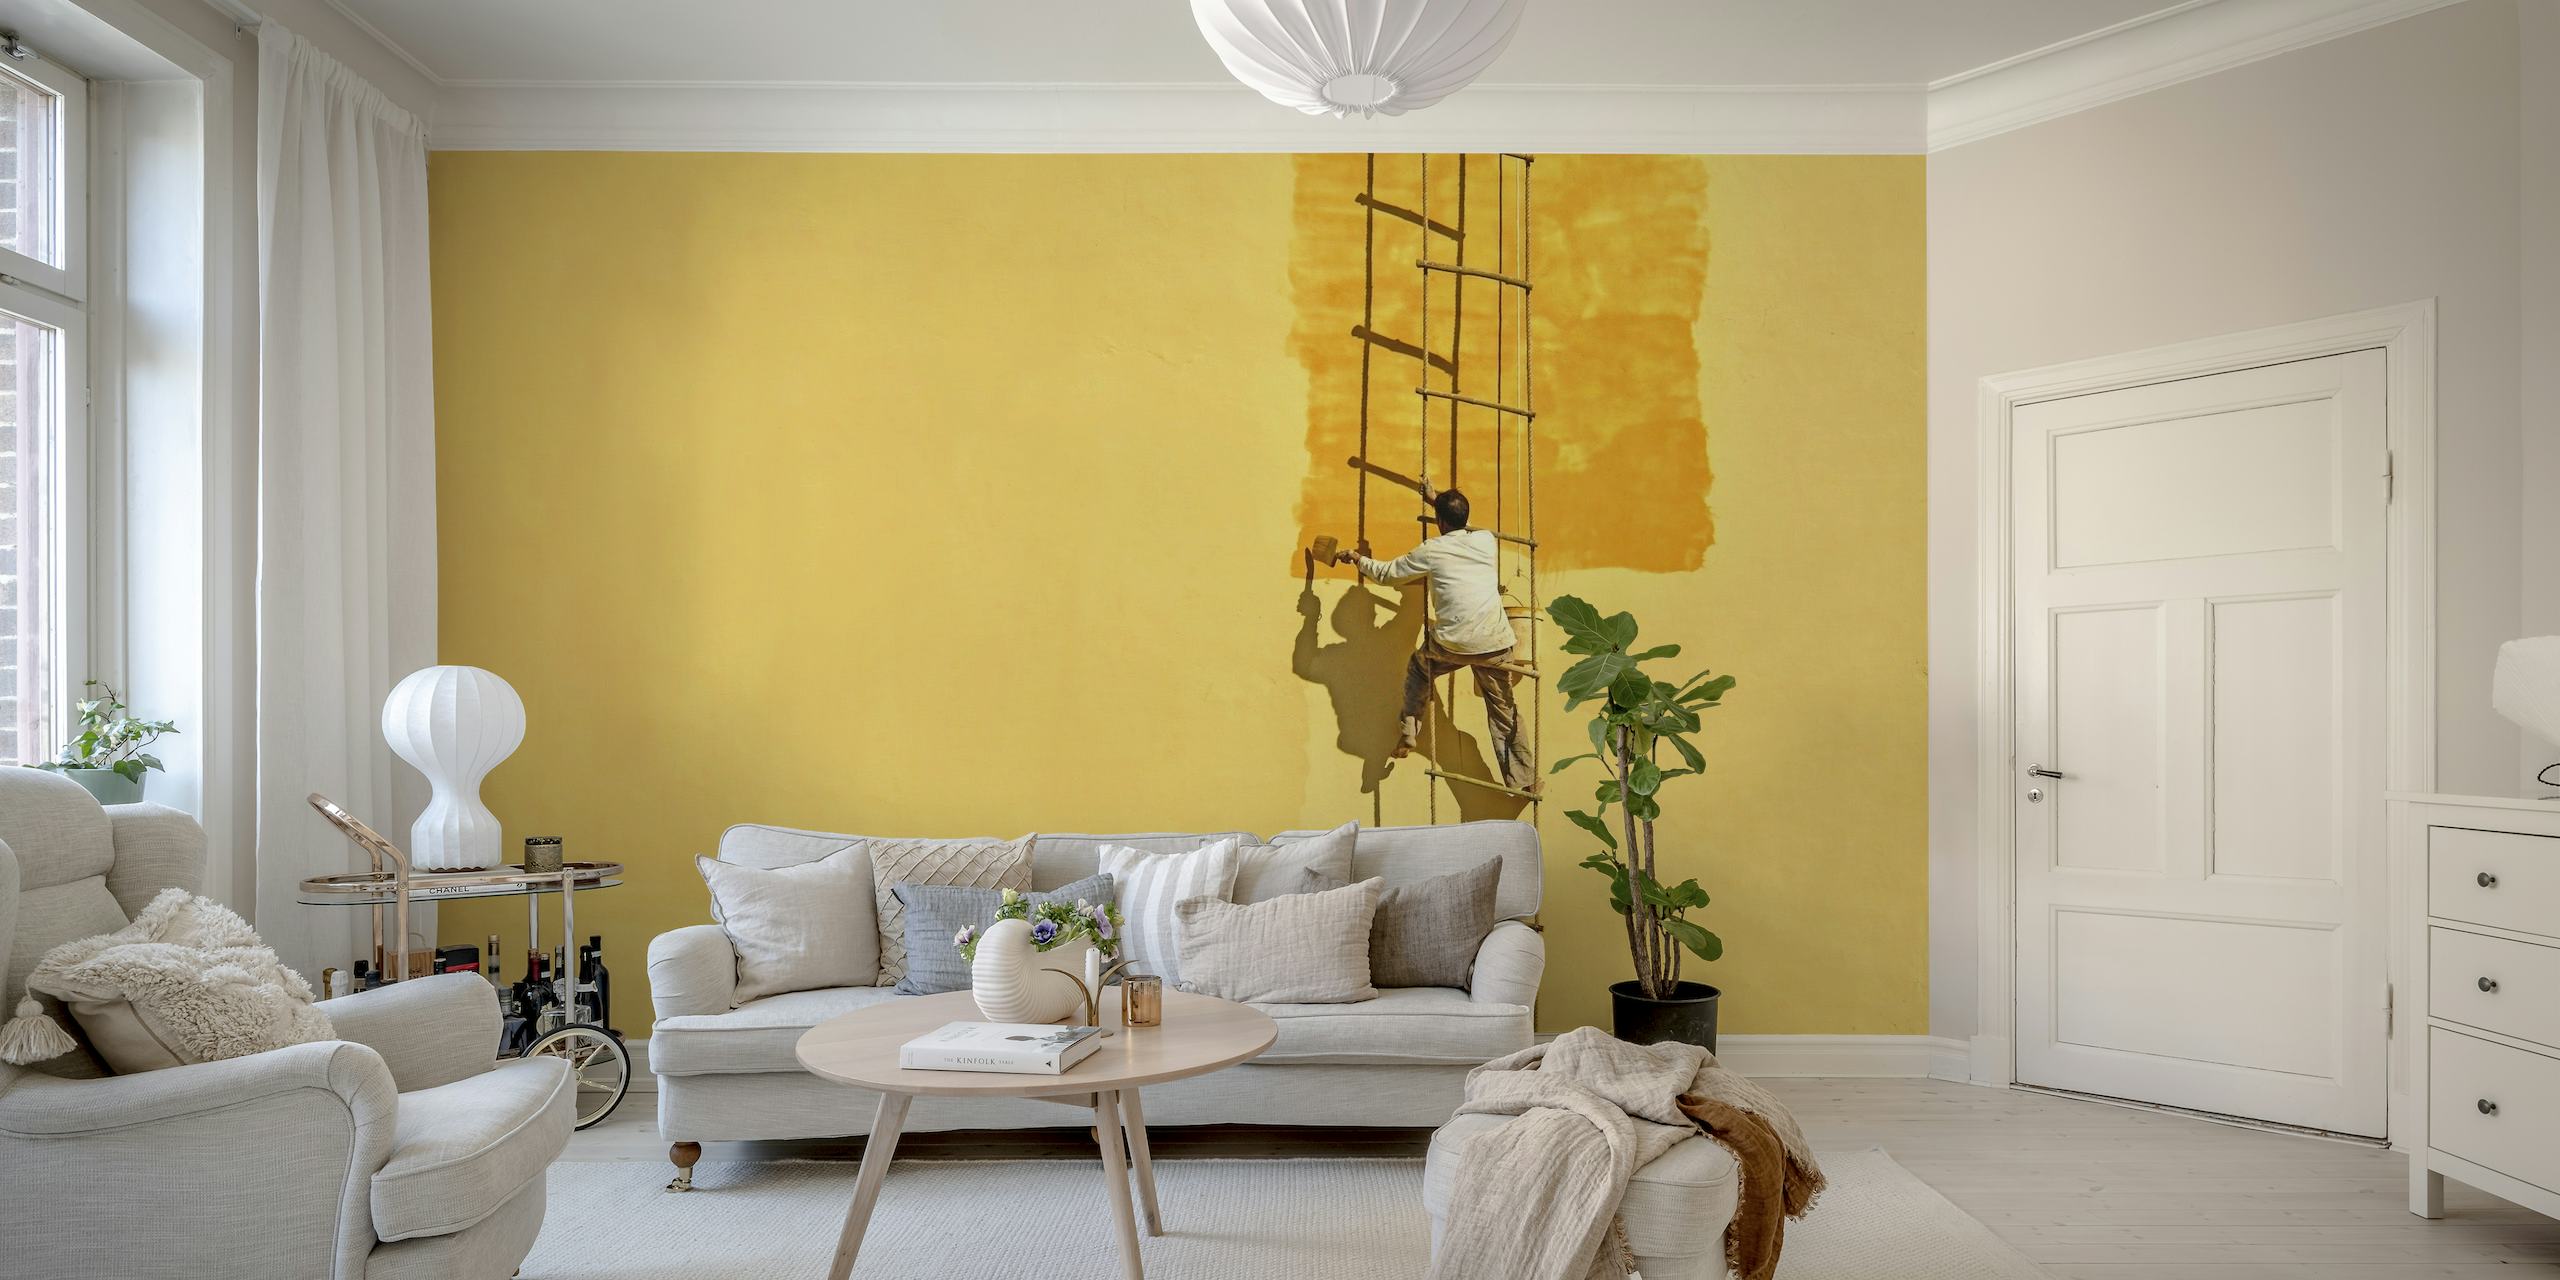 Pittore che si staglia sulla scala contro il murale giallo